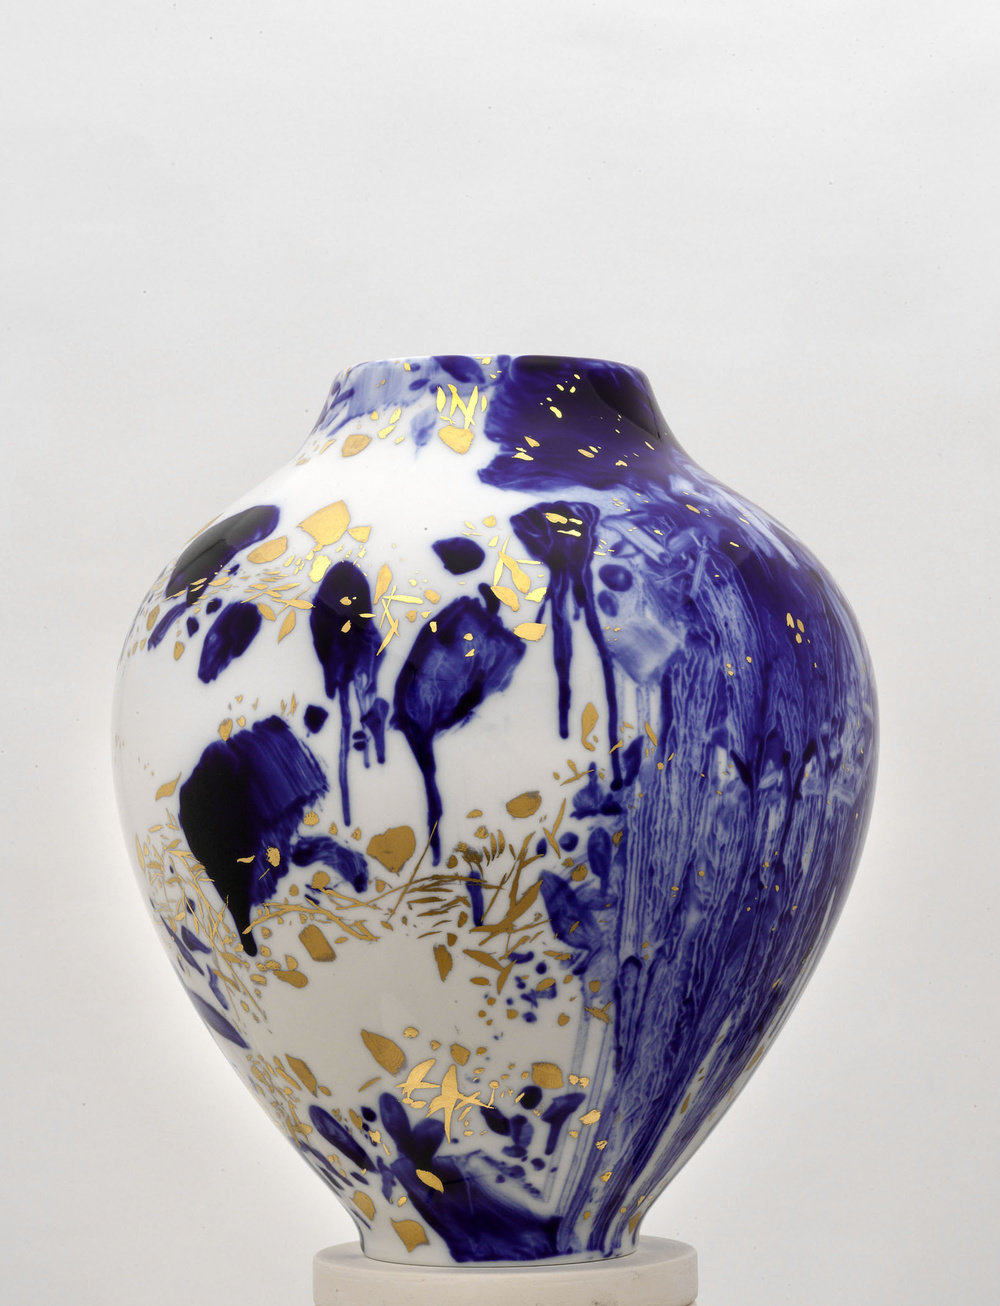 Chu teh chun, de neige, d’or, et d’azur, vase 3, (view 3), 2007 2008, porcelain, h 14 58, d 11 34  in